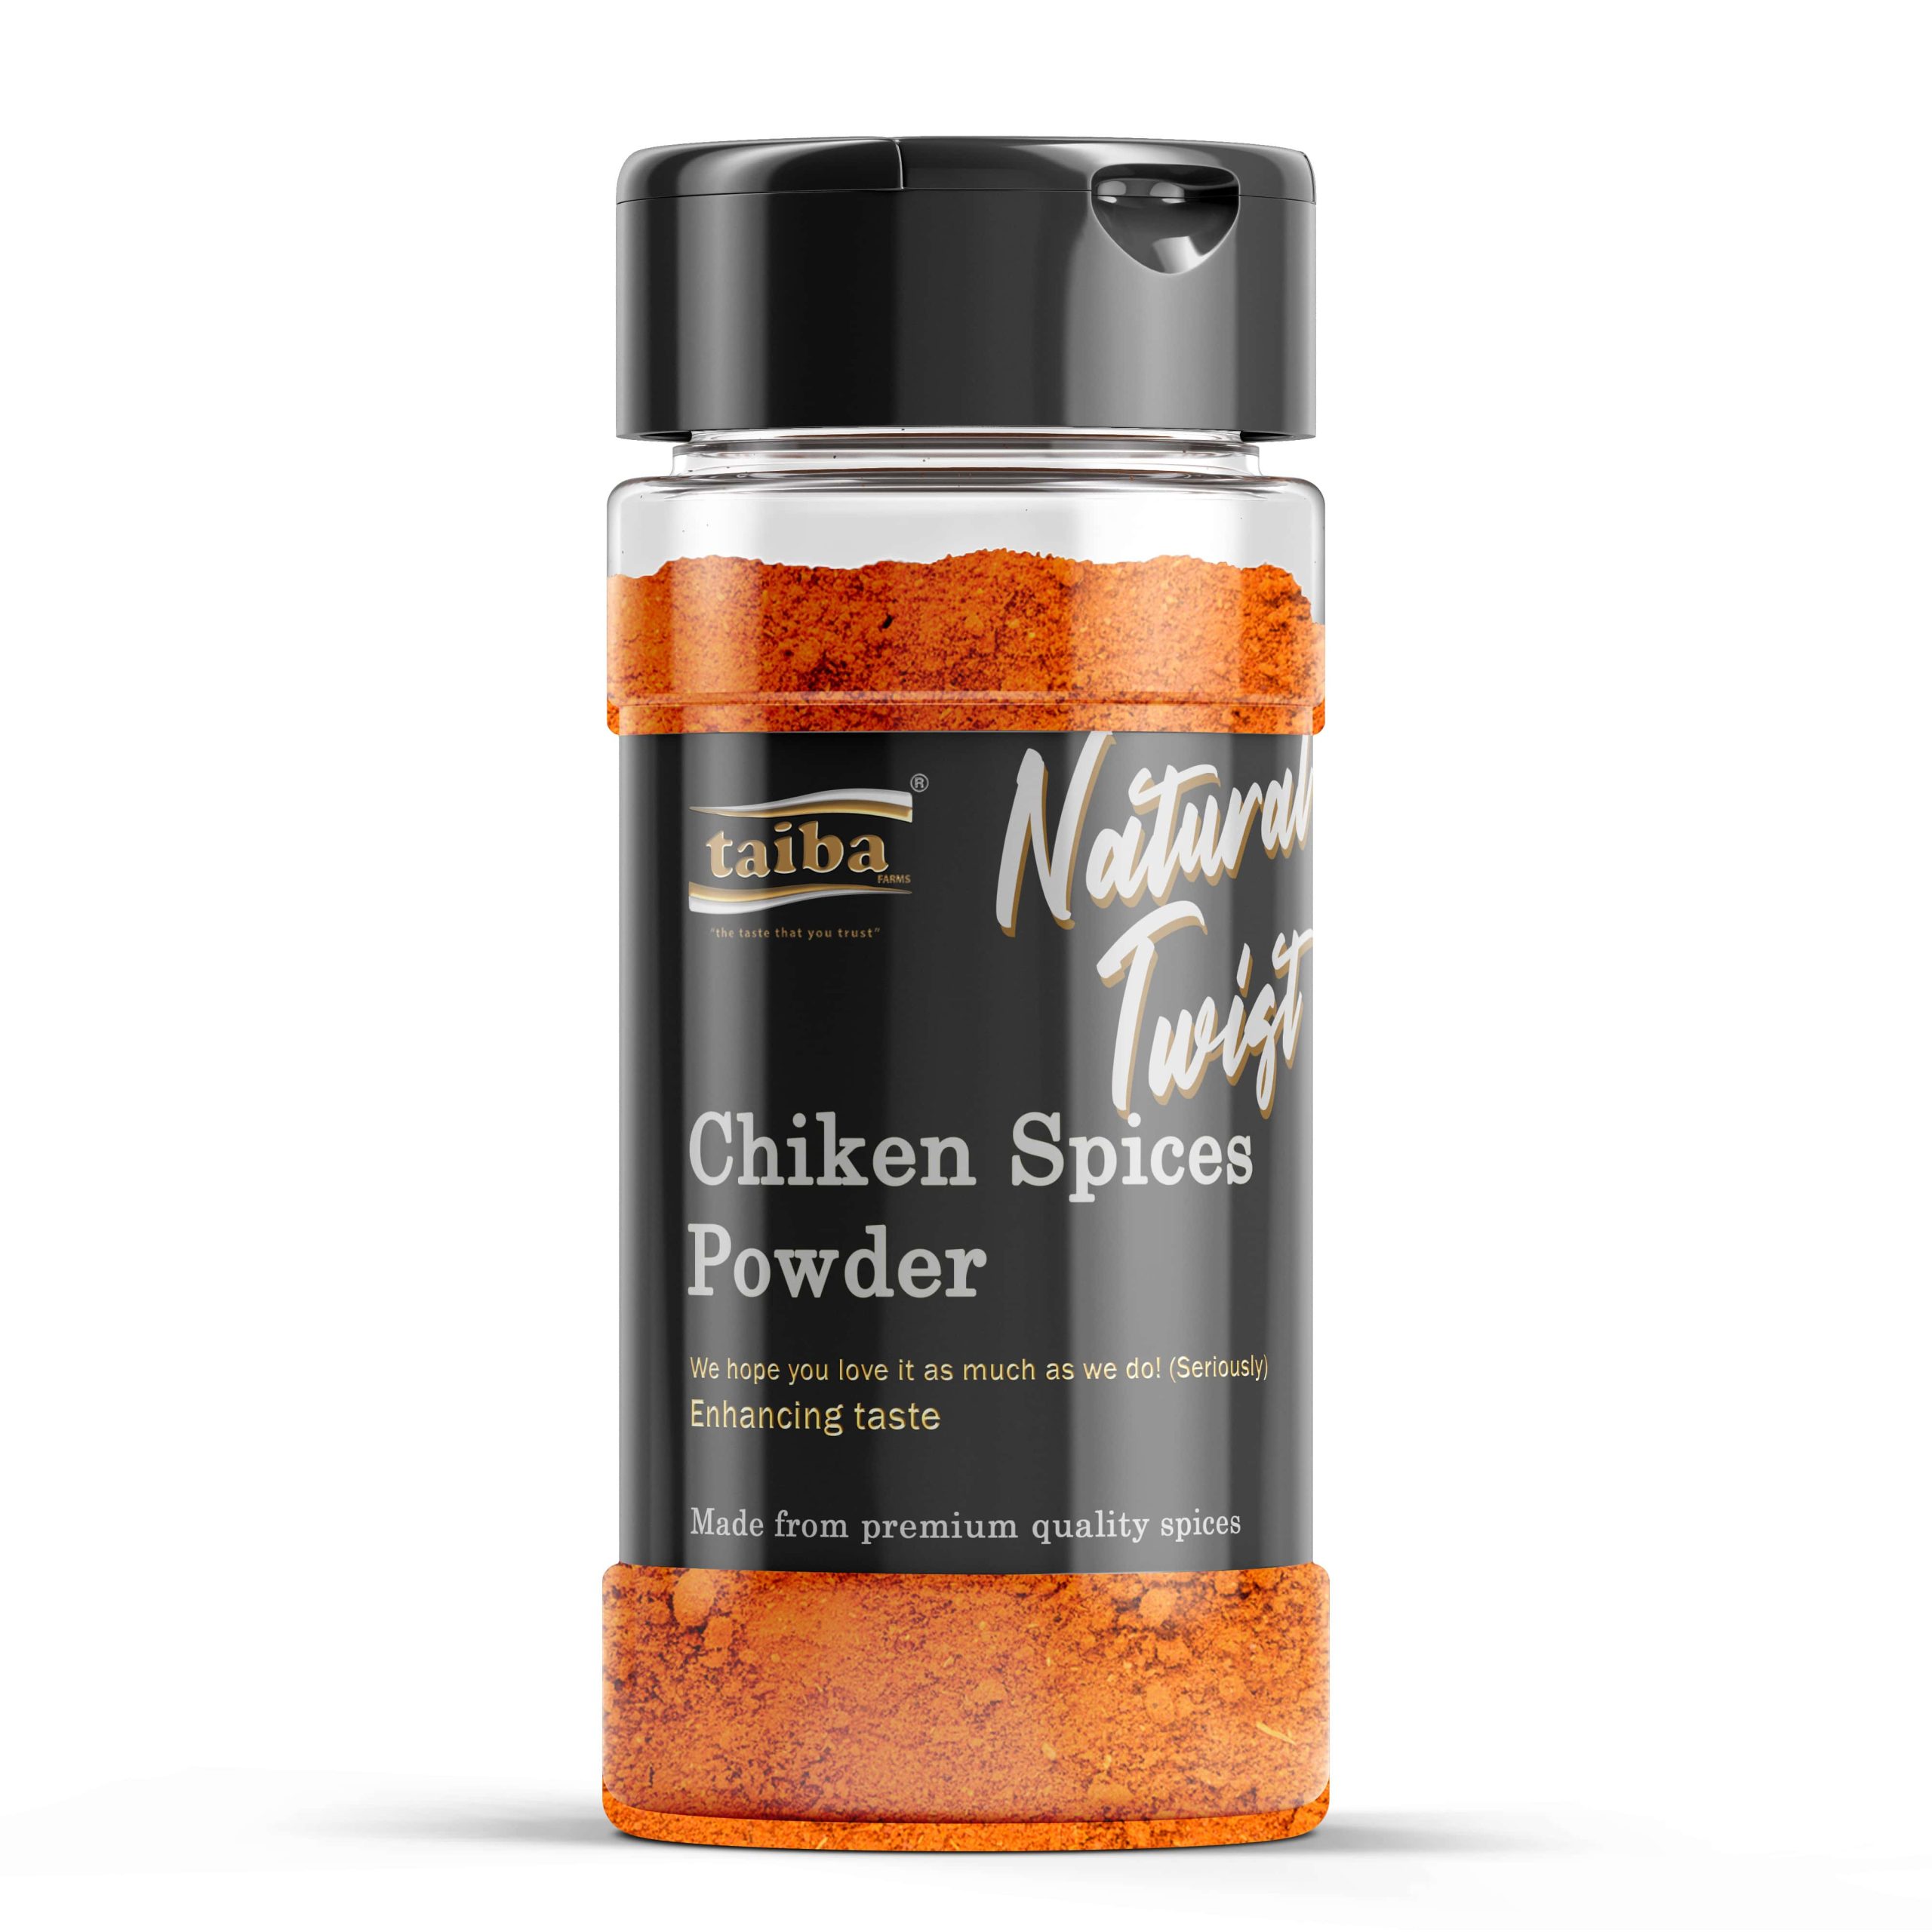 Chiken-Spices-shop-online-online-wholesale-suppliers-in-India-UAE-Saudi-Arabis-Oman-Qatar